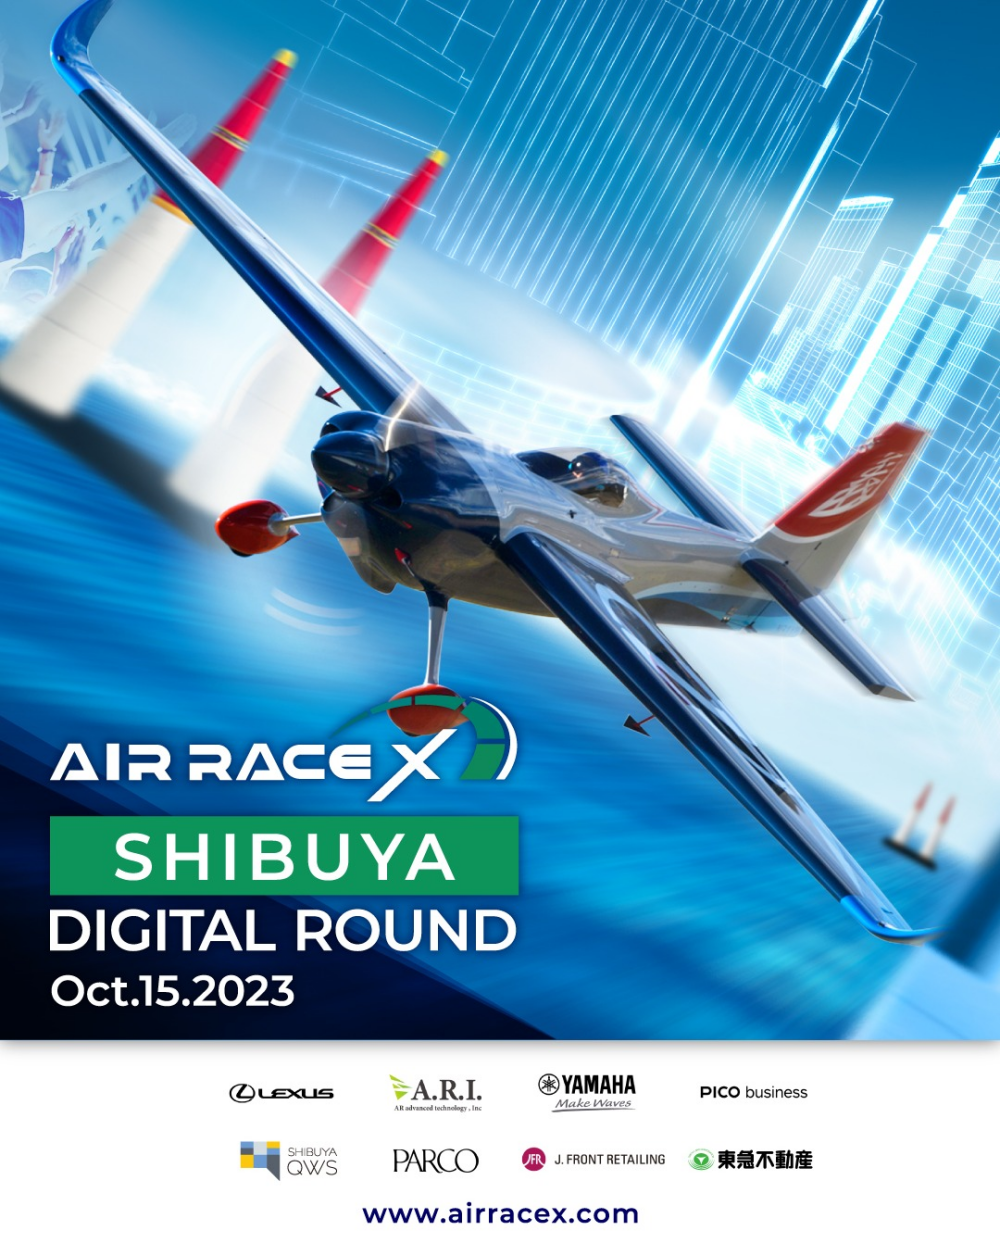 AIR RACE X - 渋谷デジタルラウンド決勝トーナメント パブリックビューイング